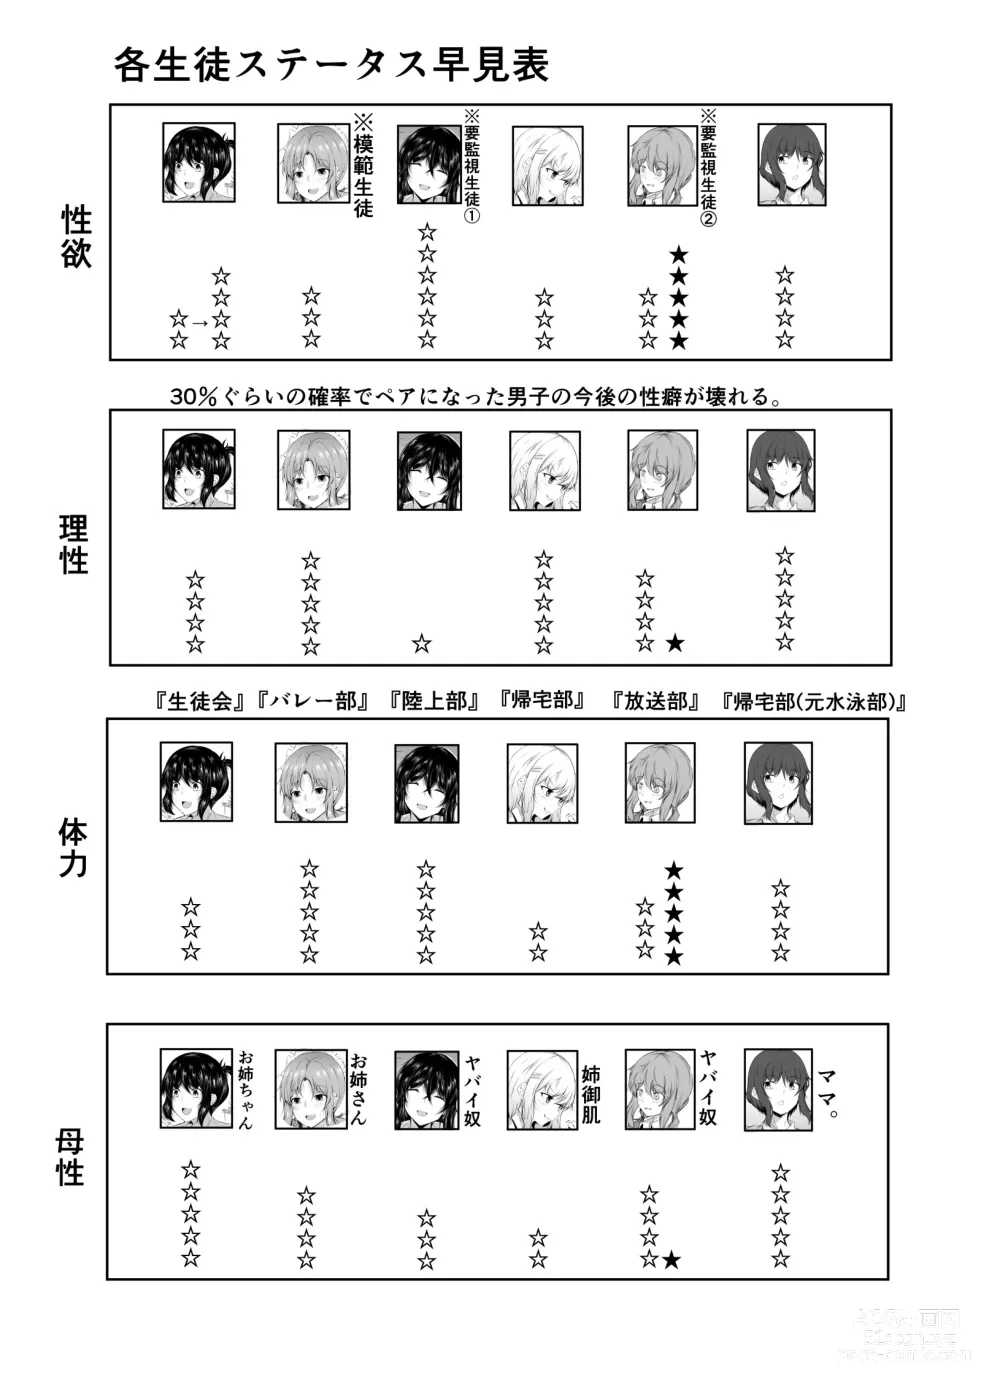 Page 65 of doujinshi kyoudou seikatu 1